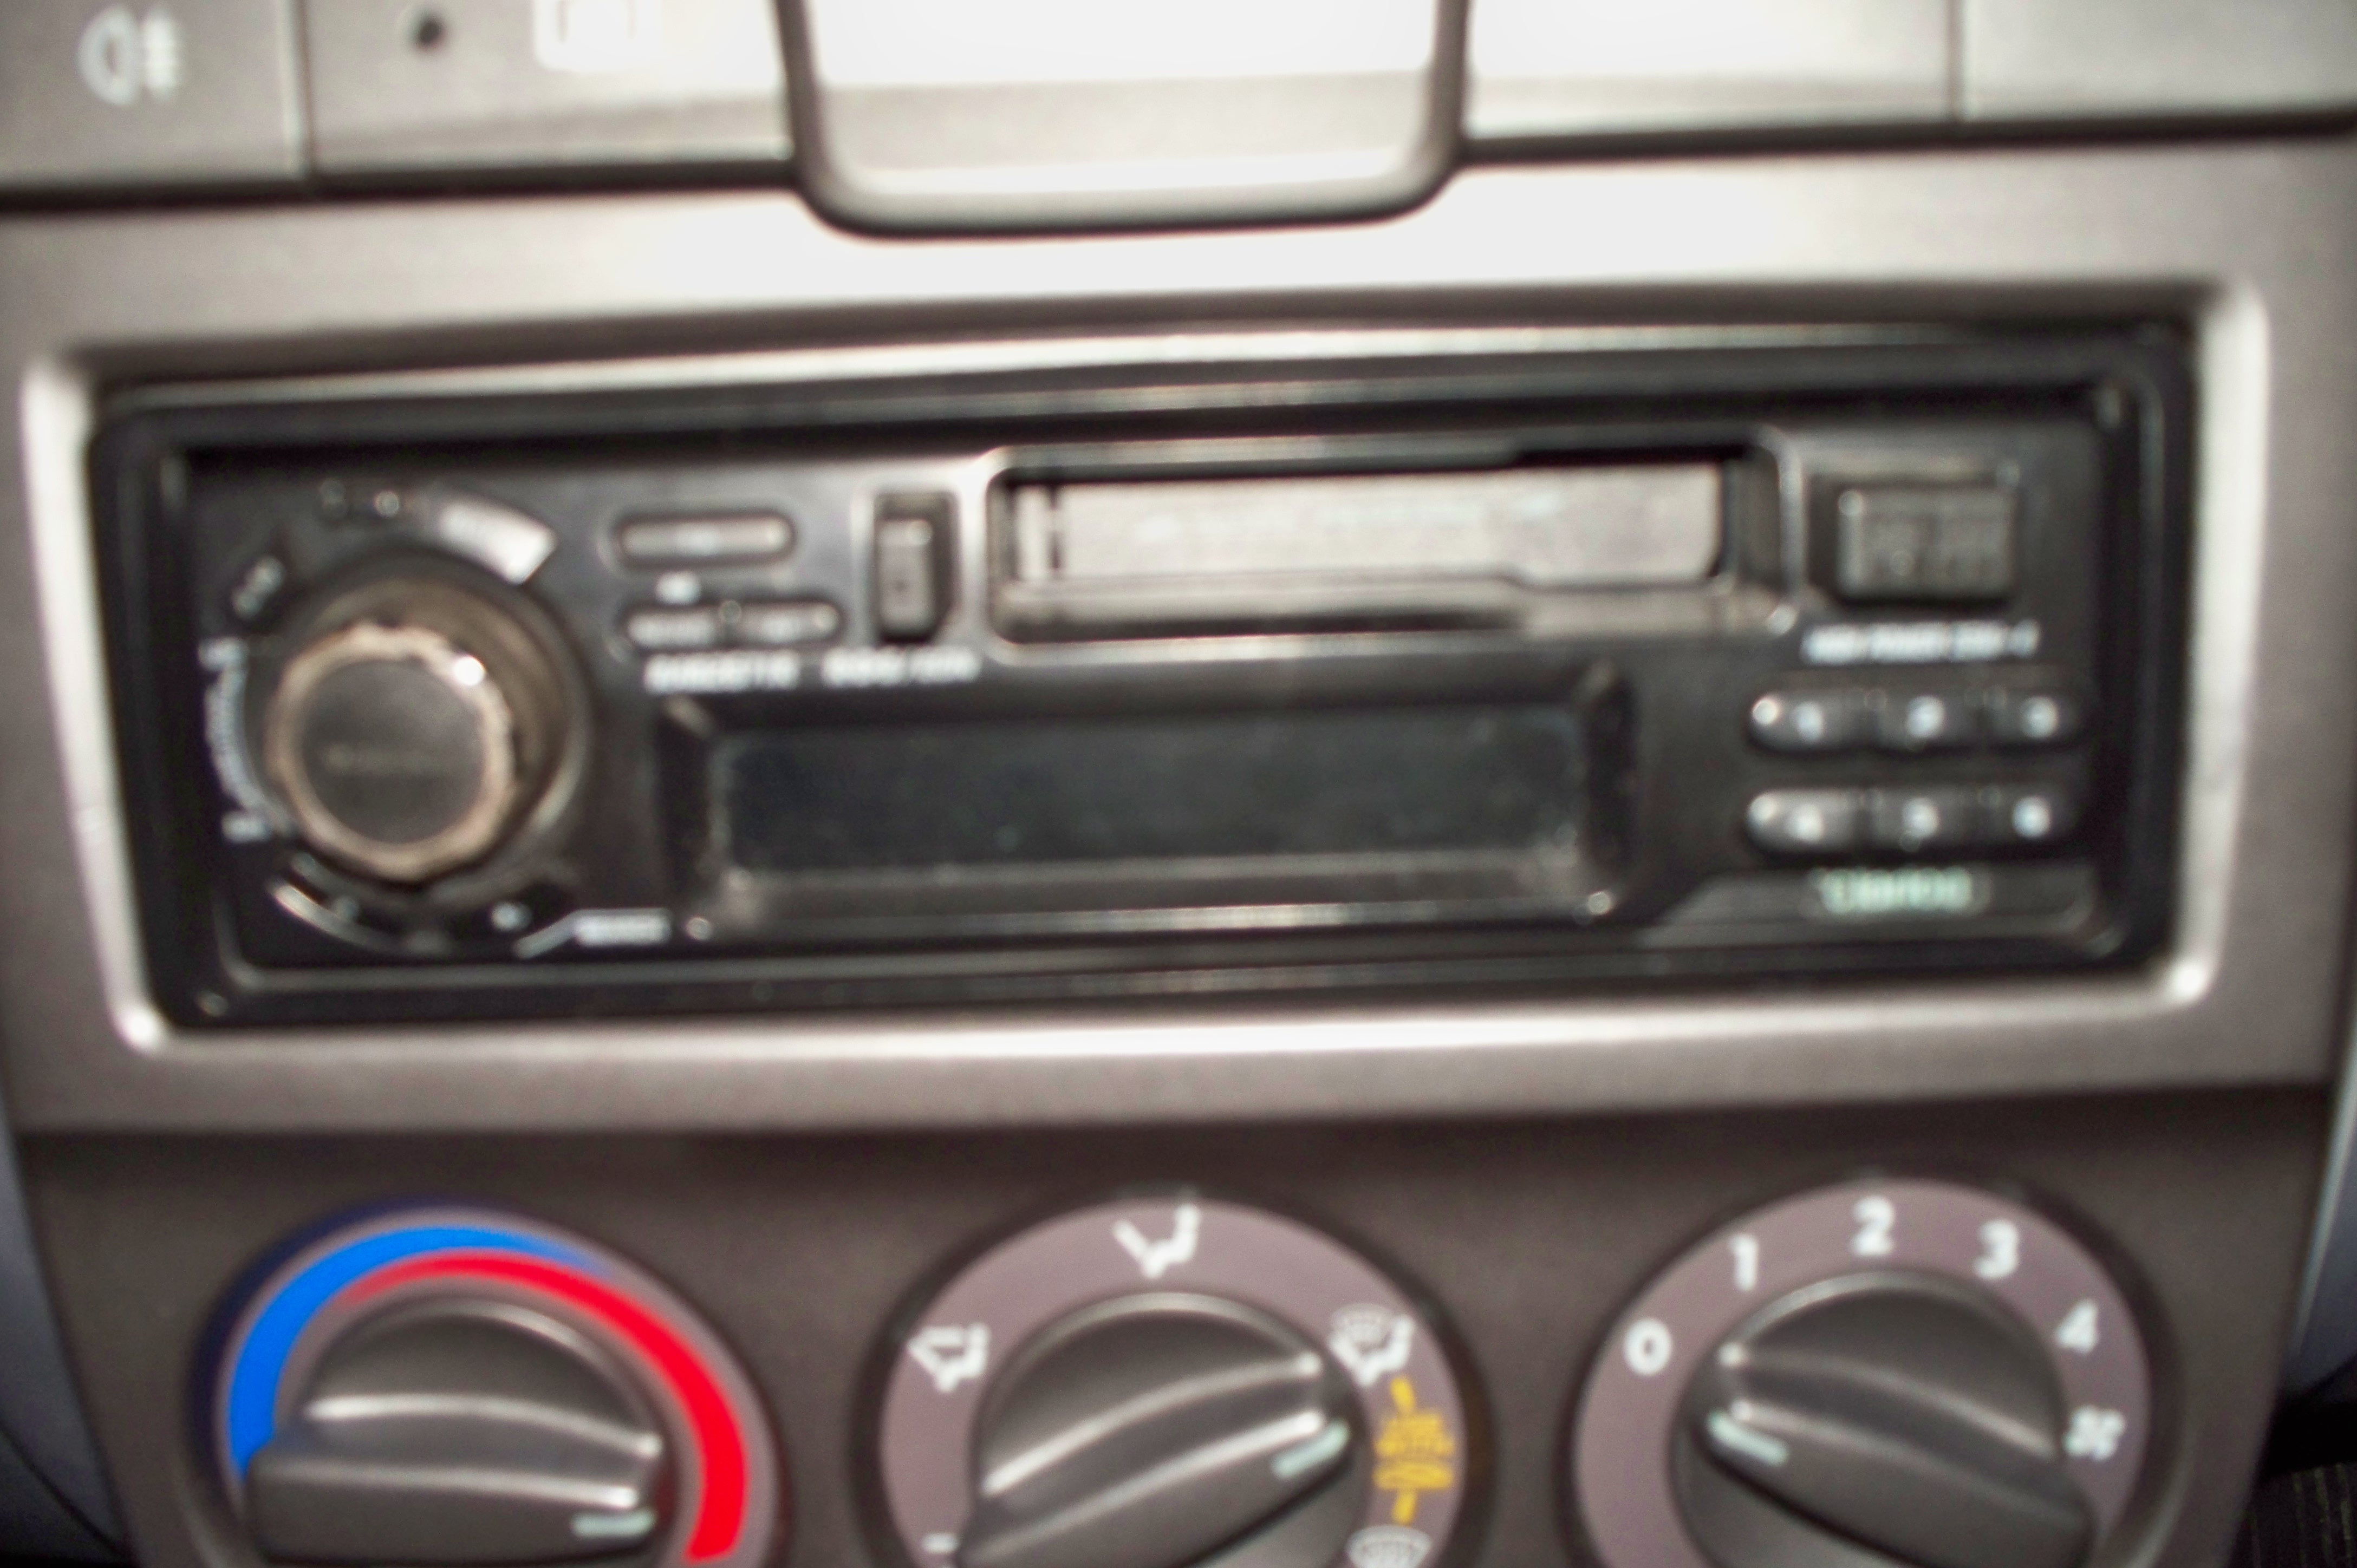 Radio fabryczne w Hyundai Accent 2001r. Jak je wyjac?